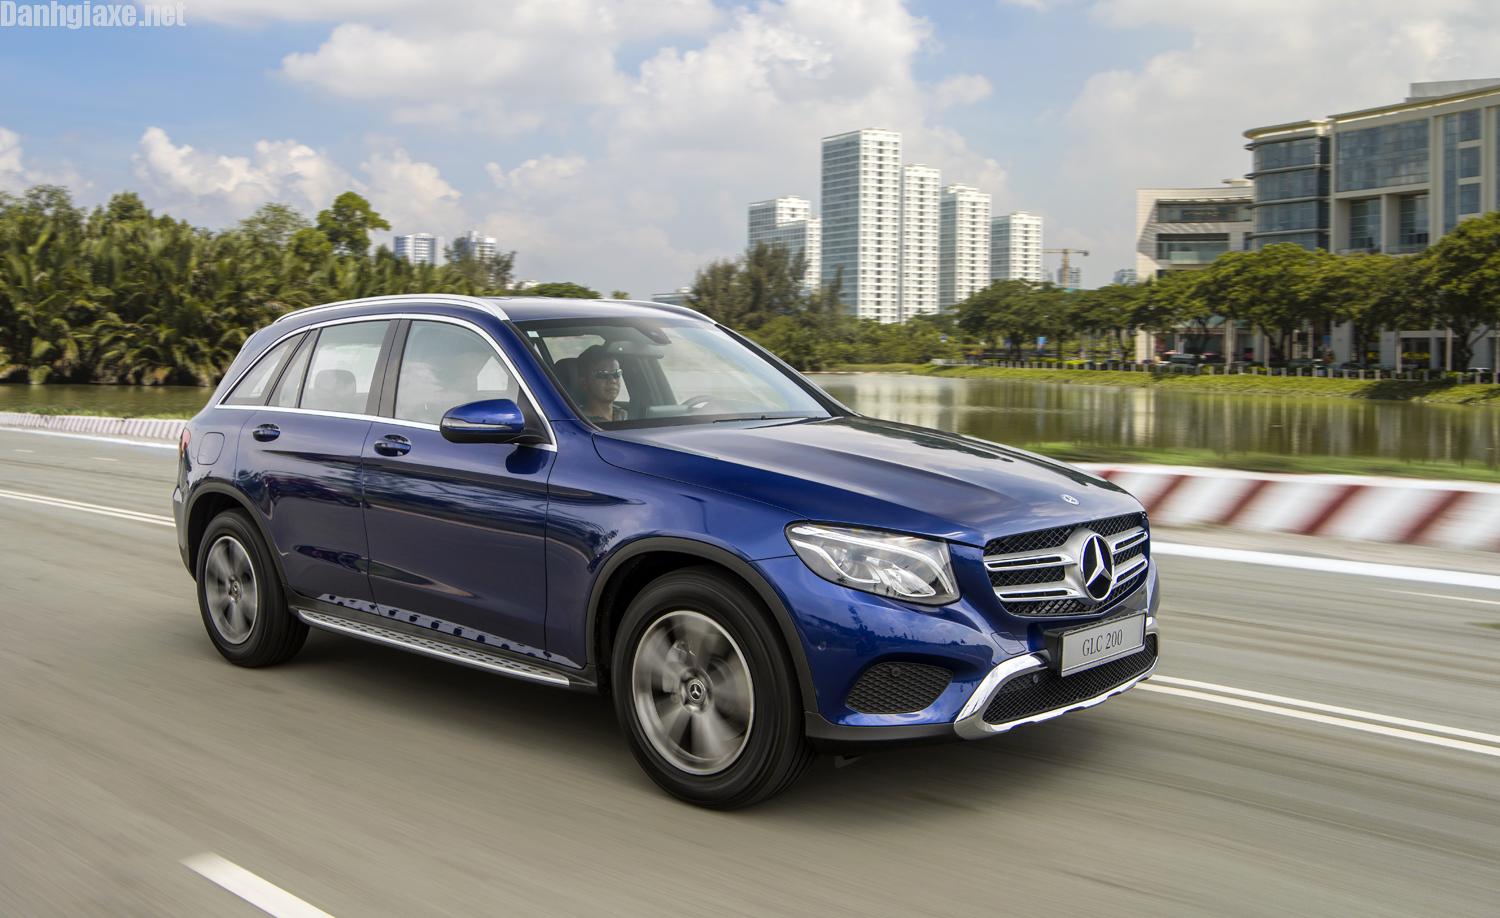 Đánh giá Mercedes-Benz GLC 200 2019: Giá bán, động cơ, thiết kế!